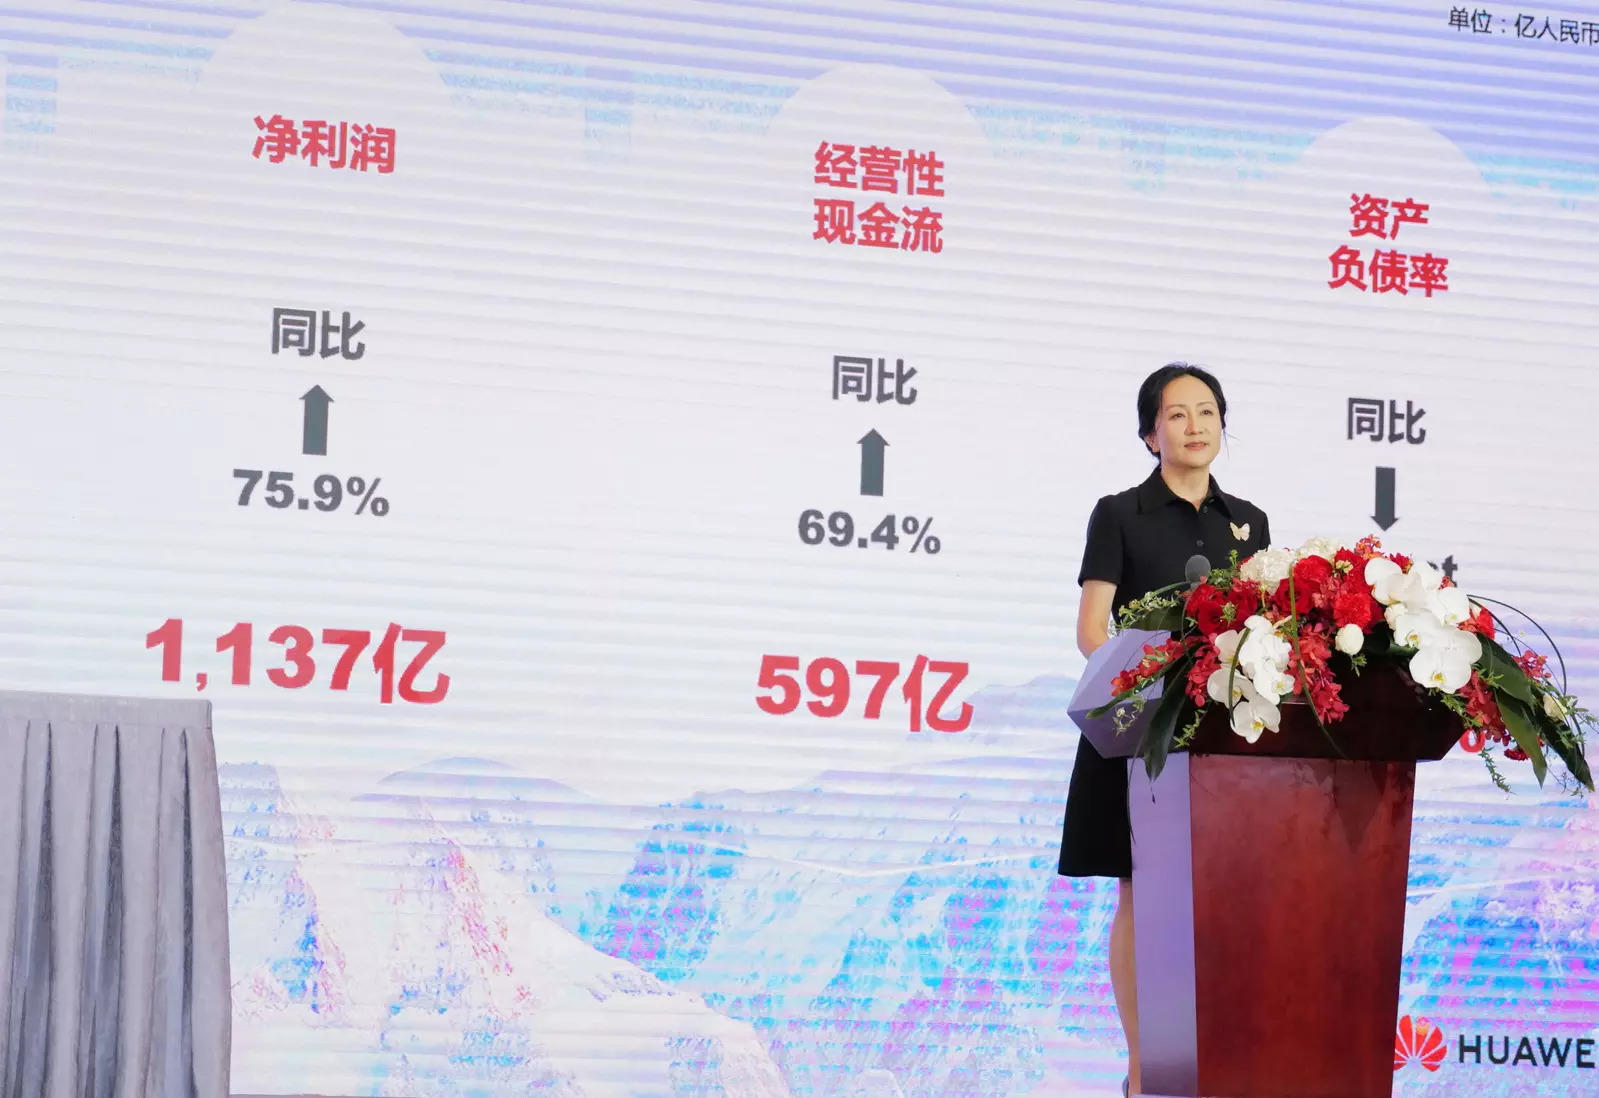 La Directrice Financière De Huawei, Meng Wanzhou, Nommée Vice-Présidente